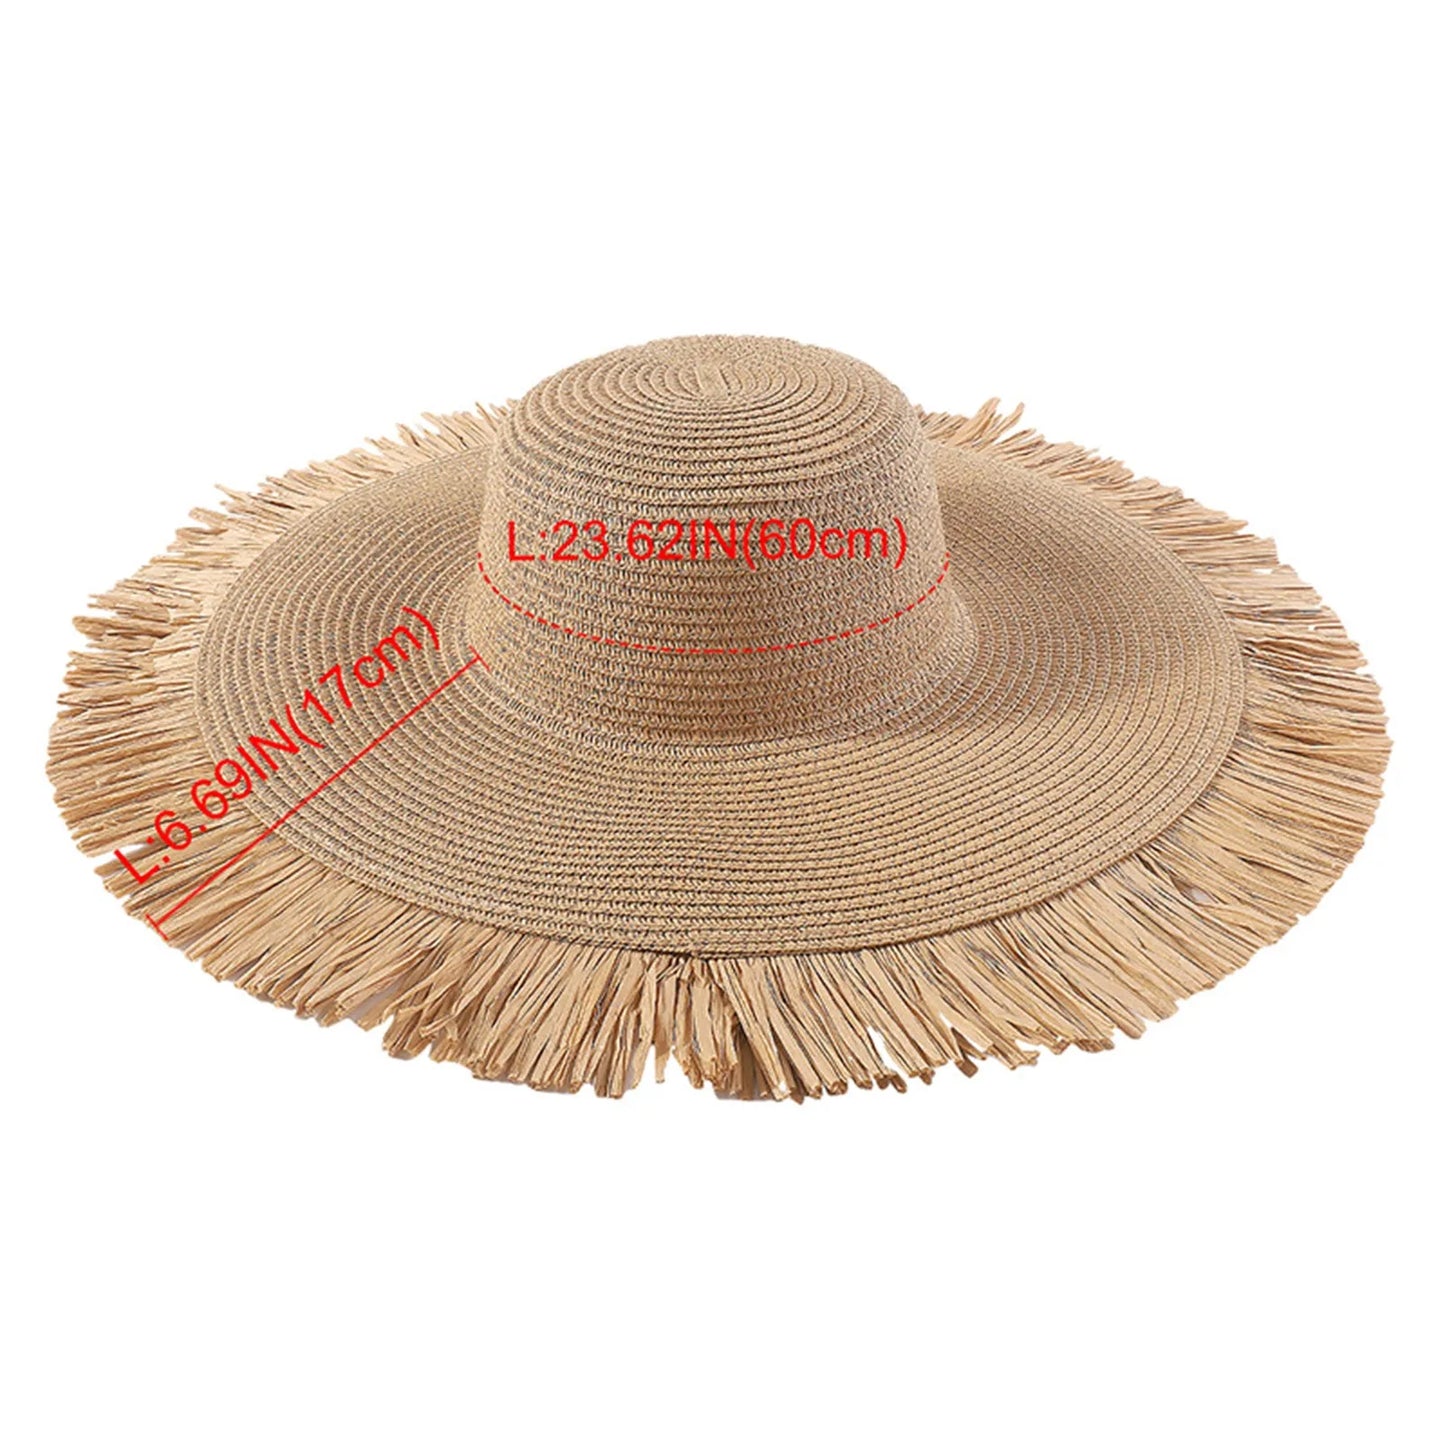 Fashion femminile estate bohémien all'aperto big brim hat have vacanze casual happy beach hacep paglia gallo femminile f i e n d s hat